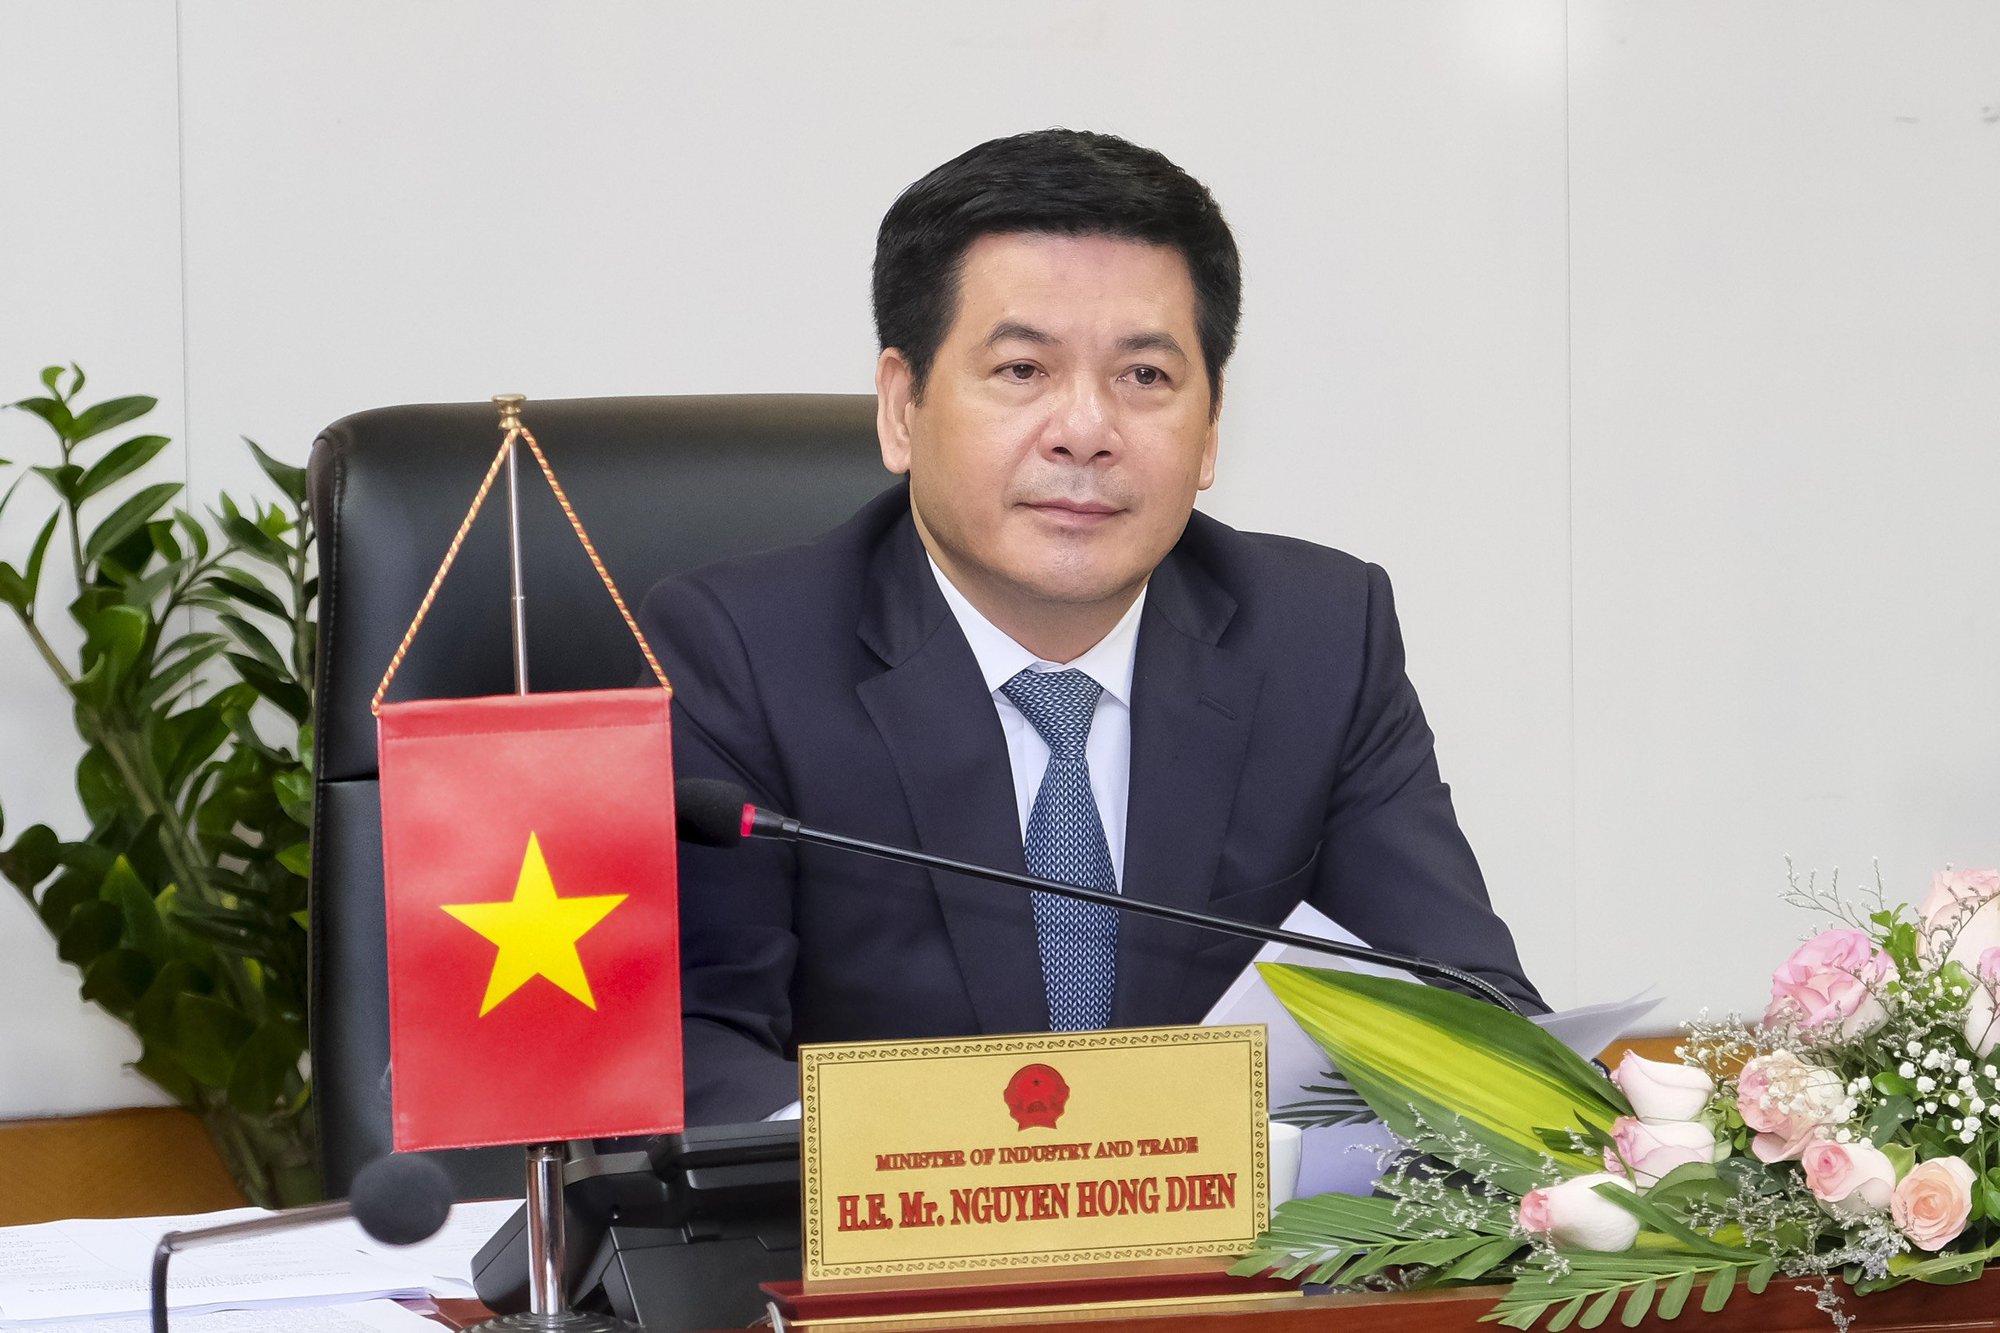 Bộ trưởng Nguyễn Hồng Diên: Ngành Công Thương kiên định thực hiện mục tiêu đã đề ra